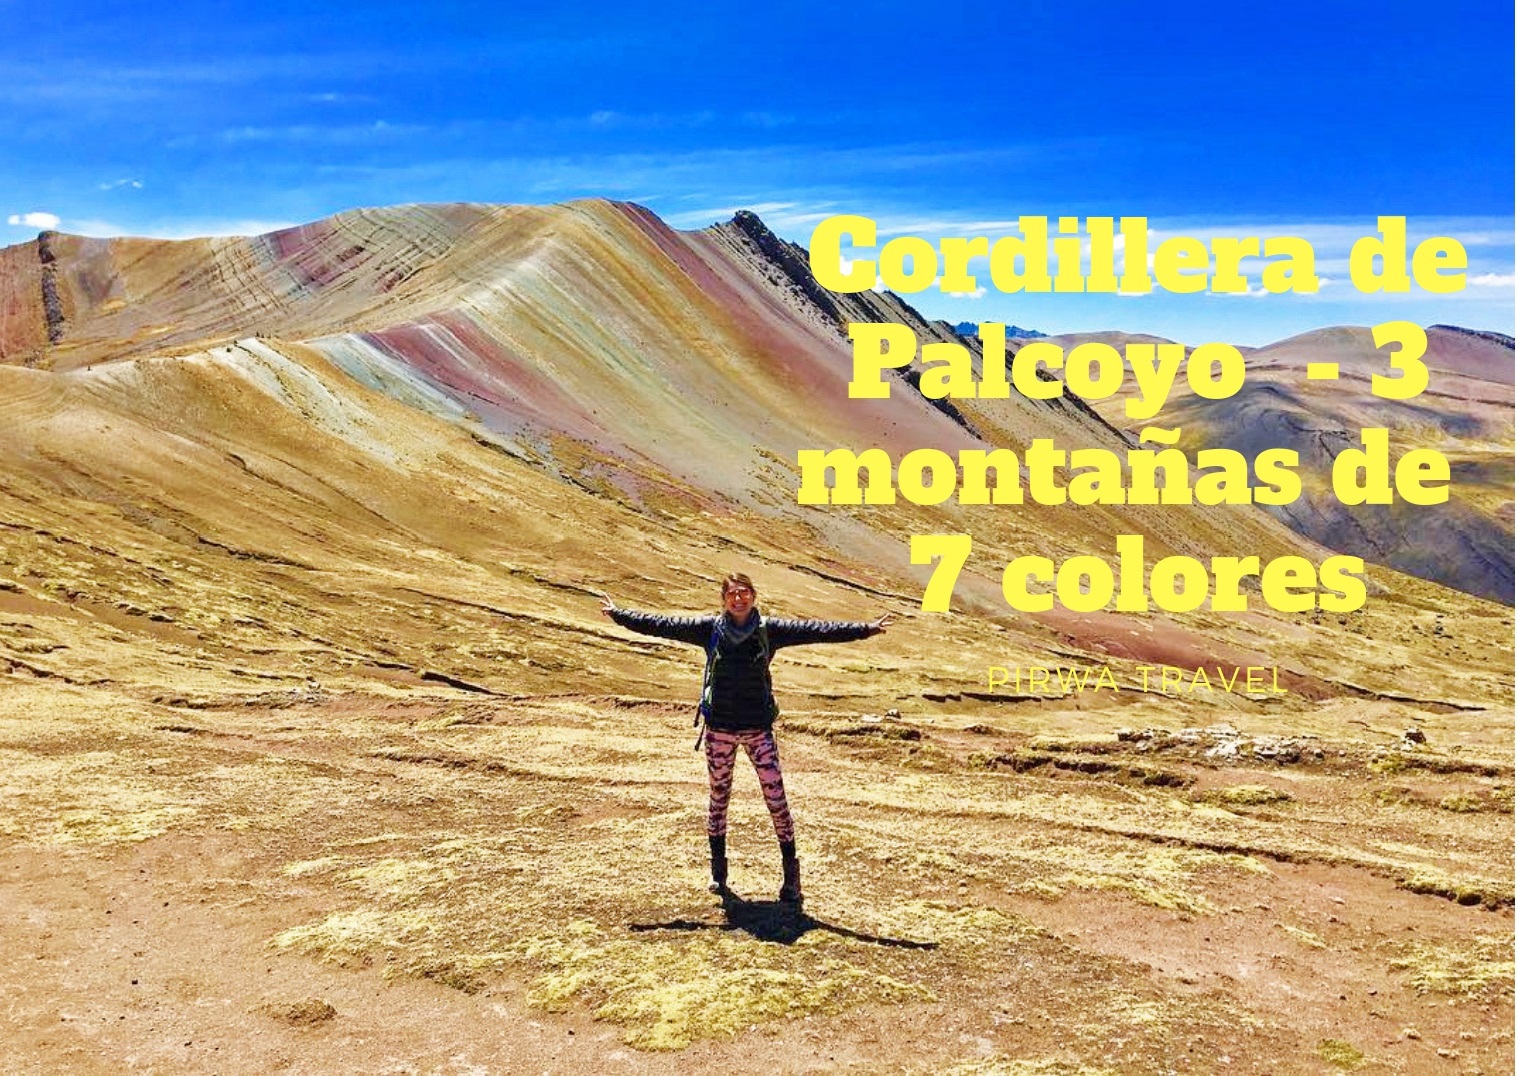 Palcoyo - Las 3 montañas de 7 colores 